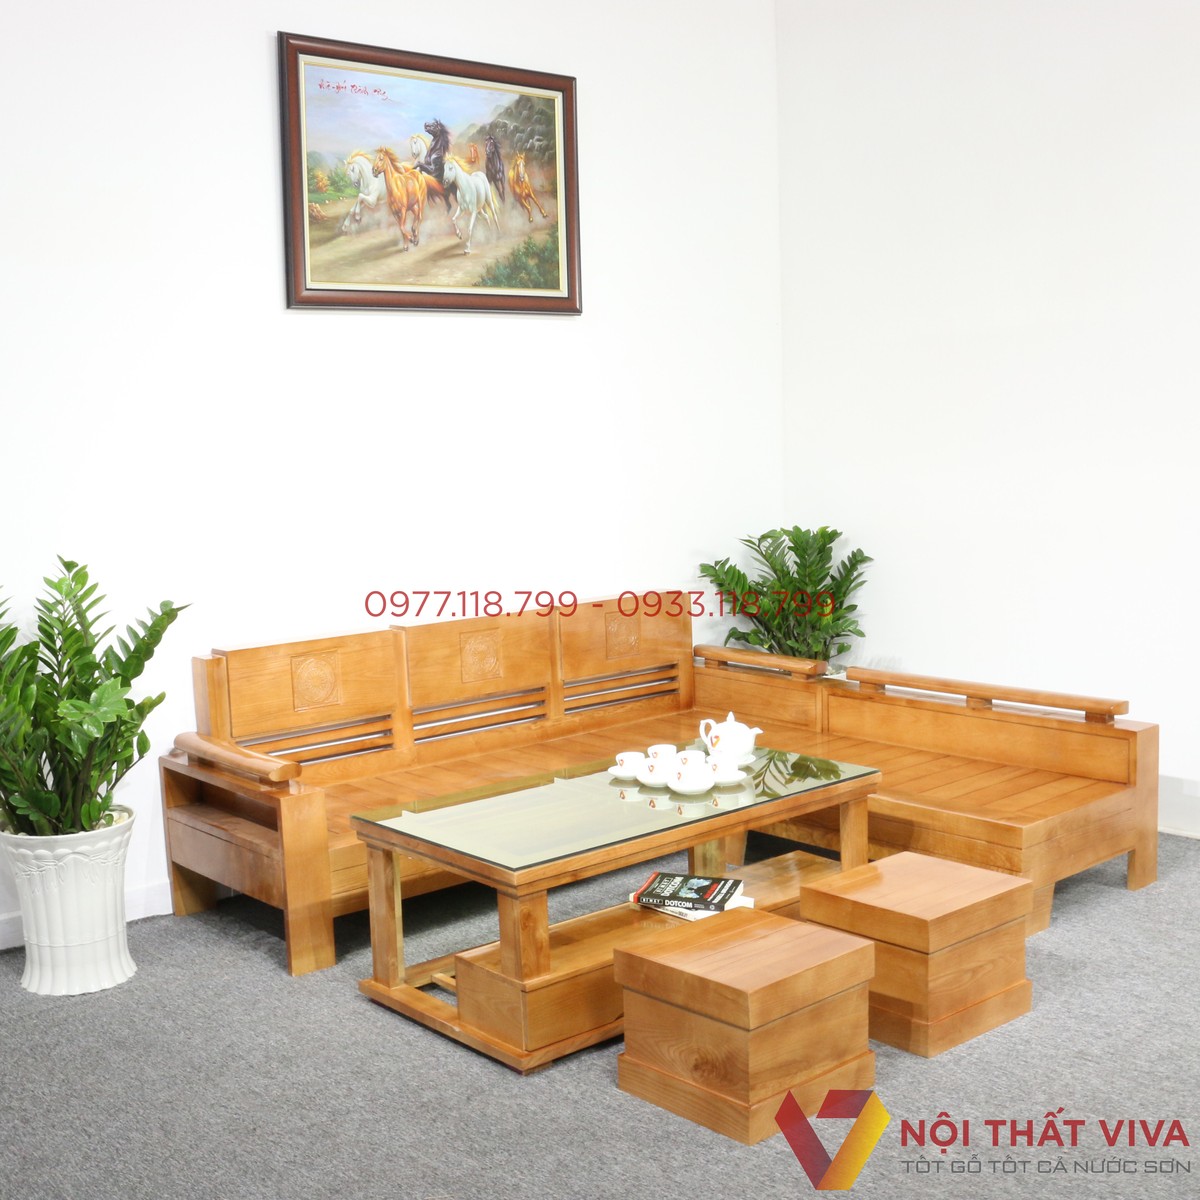 Ghế sofa gỗ giá rẻ là lựa chọn tuyệt vời cho những ai yêu thích nội thất đơn giản, gọn nhẹ và tiết kiệm chi phí. Để đáp ứng nhu cầu của khách hàng, chúng tôi tự hào giới thiệu đến bạn những mẫu ghế sofa gỗ giá rẻ, đa dạng về kiểu dáng và màu sắc. Hãy ghé thăm hình ảnh để khám phá và lựa chọn sản phẩm phù hợp với tổ ấm của bạn.